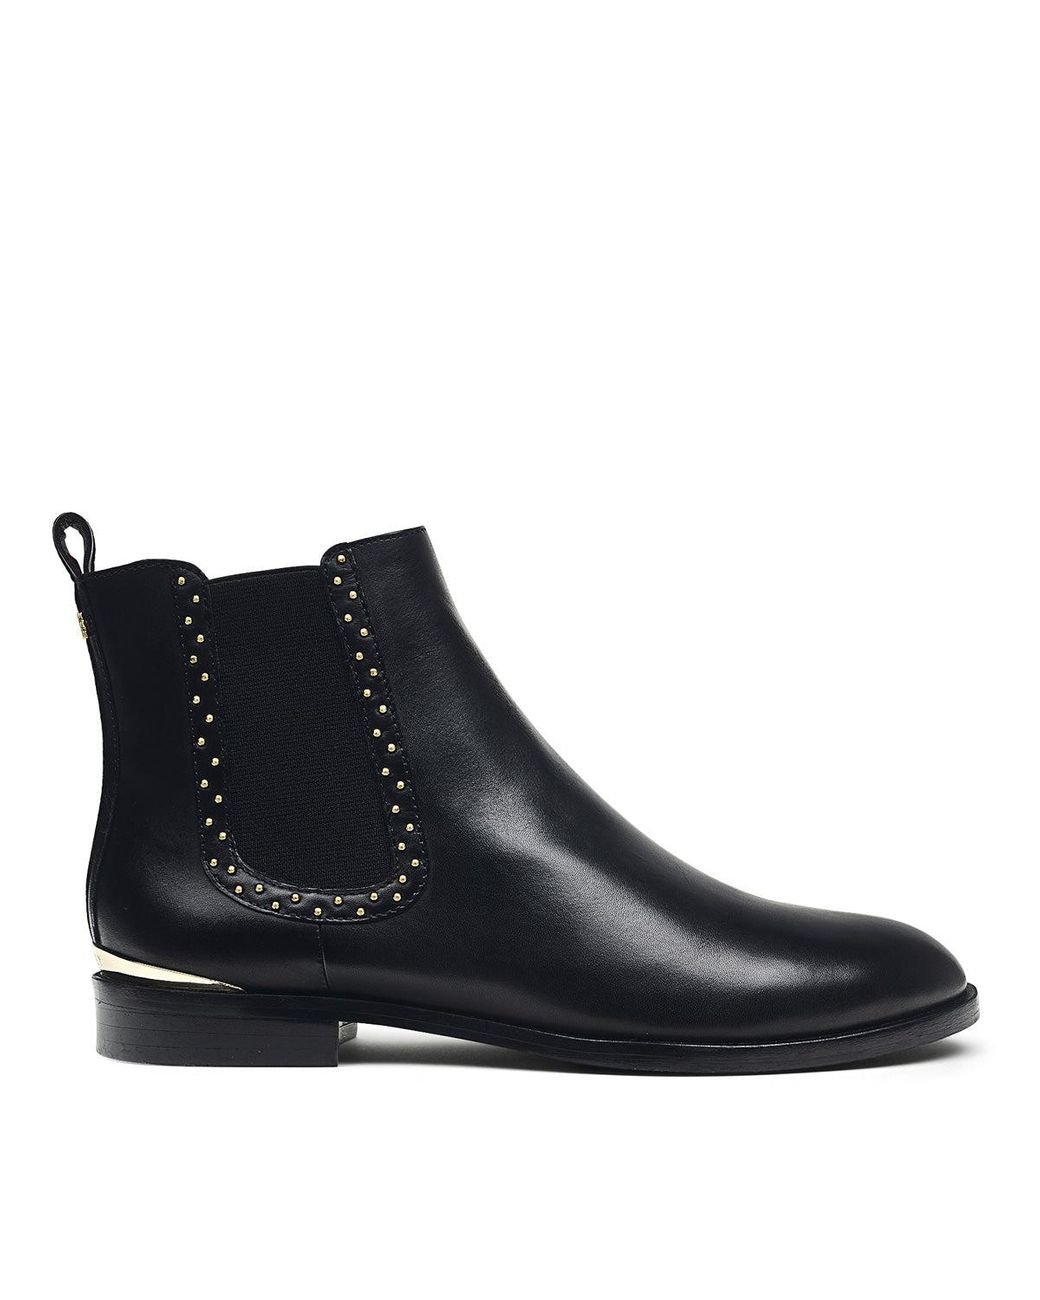 Radley Harper Grove - Stud Detail Chelsea Boot in Black | Lyst